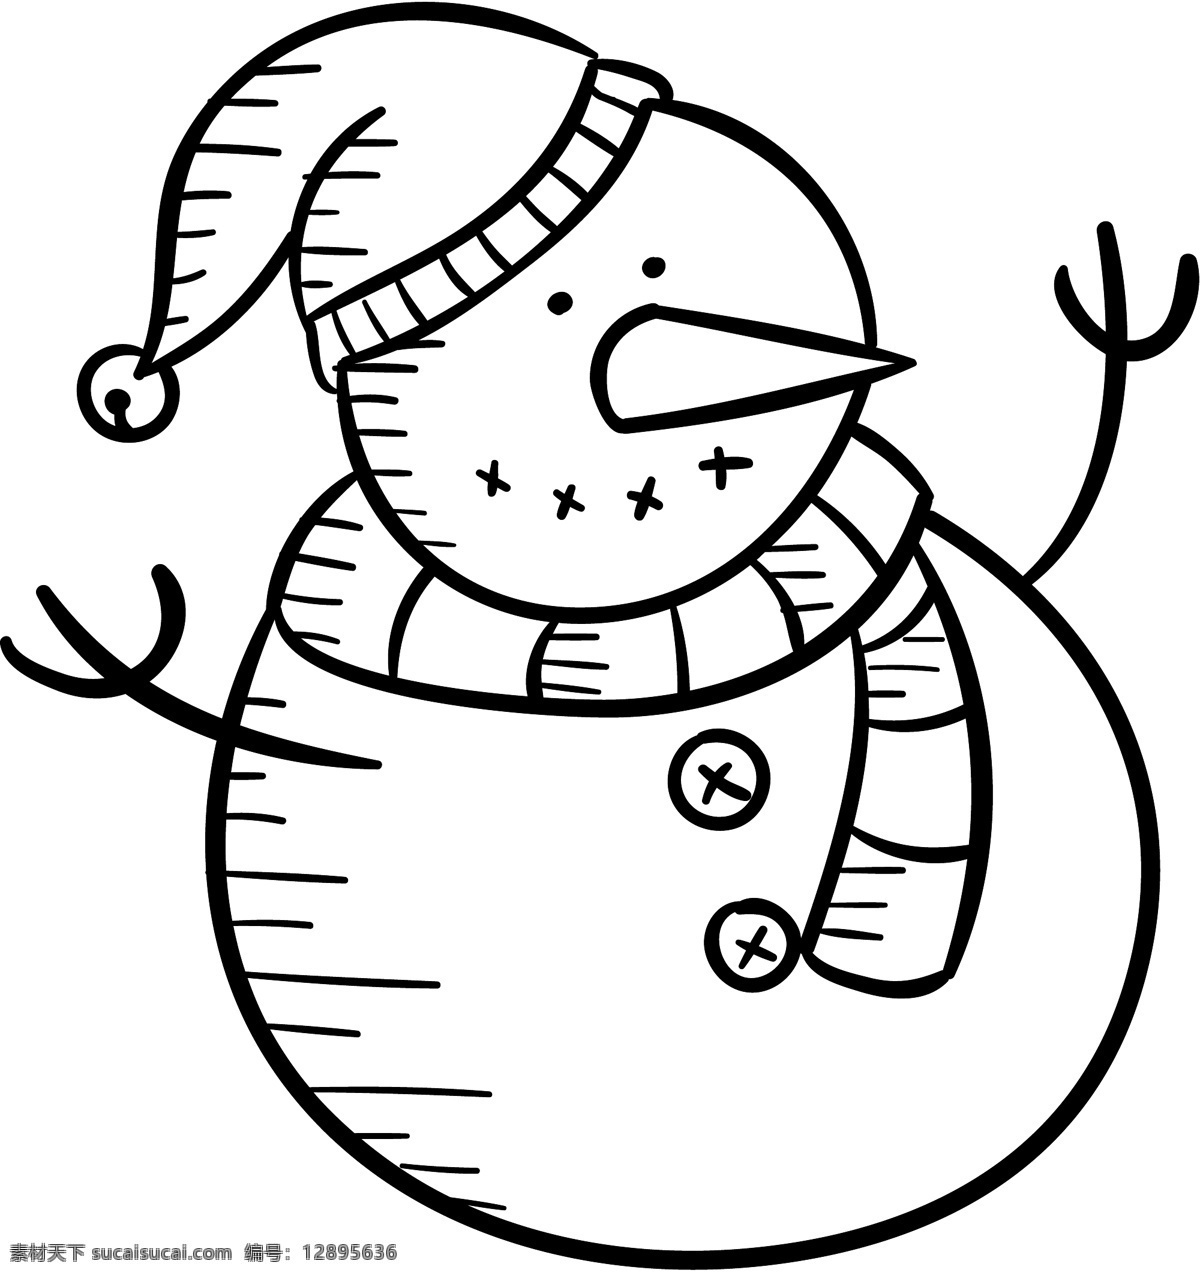 线性 手绘 icon 图标素材 扁平 单色 多色 简约 精美 可爱 图标 圣诞节 圣诞 雪人 流星